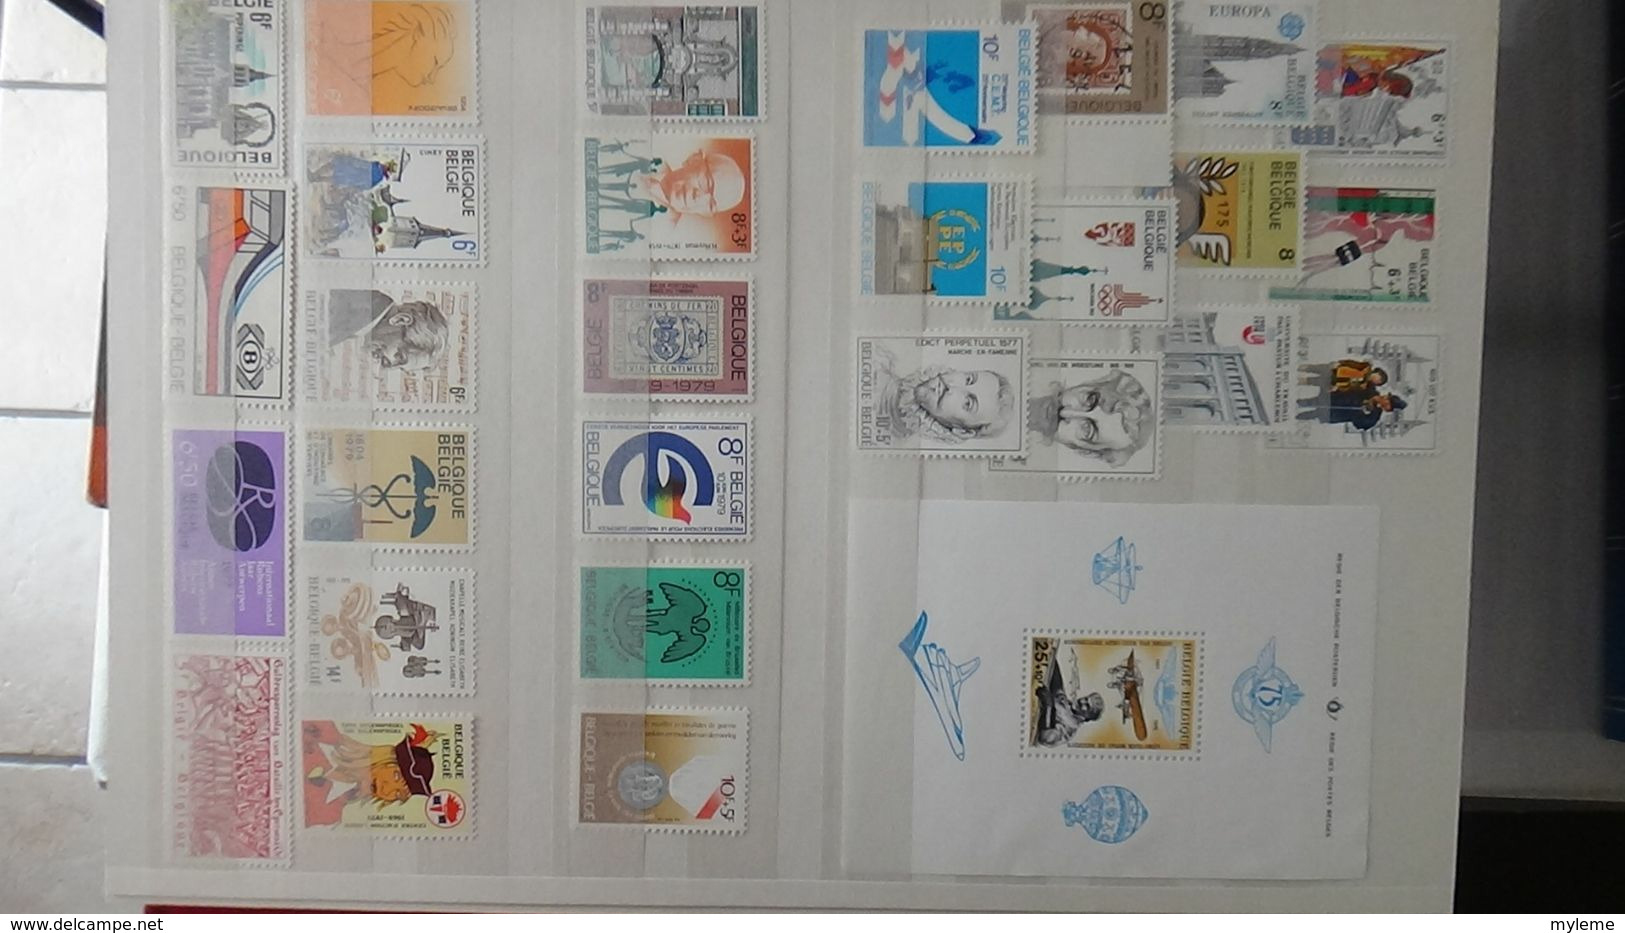 H121 Très belle collection de Belgique en timbres, carnets et blocs **. A saisir !!!